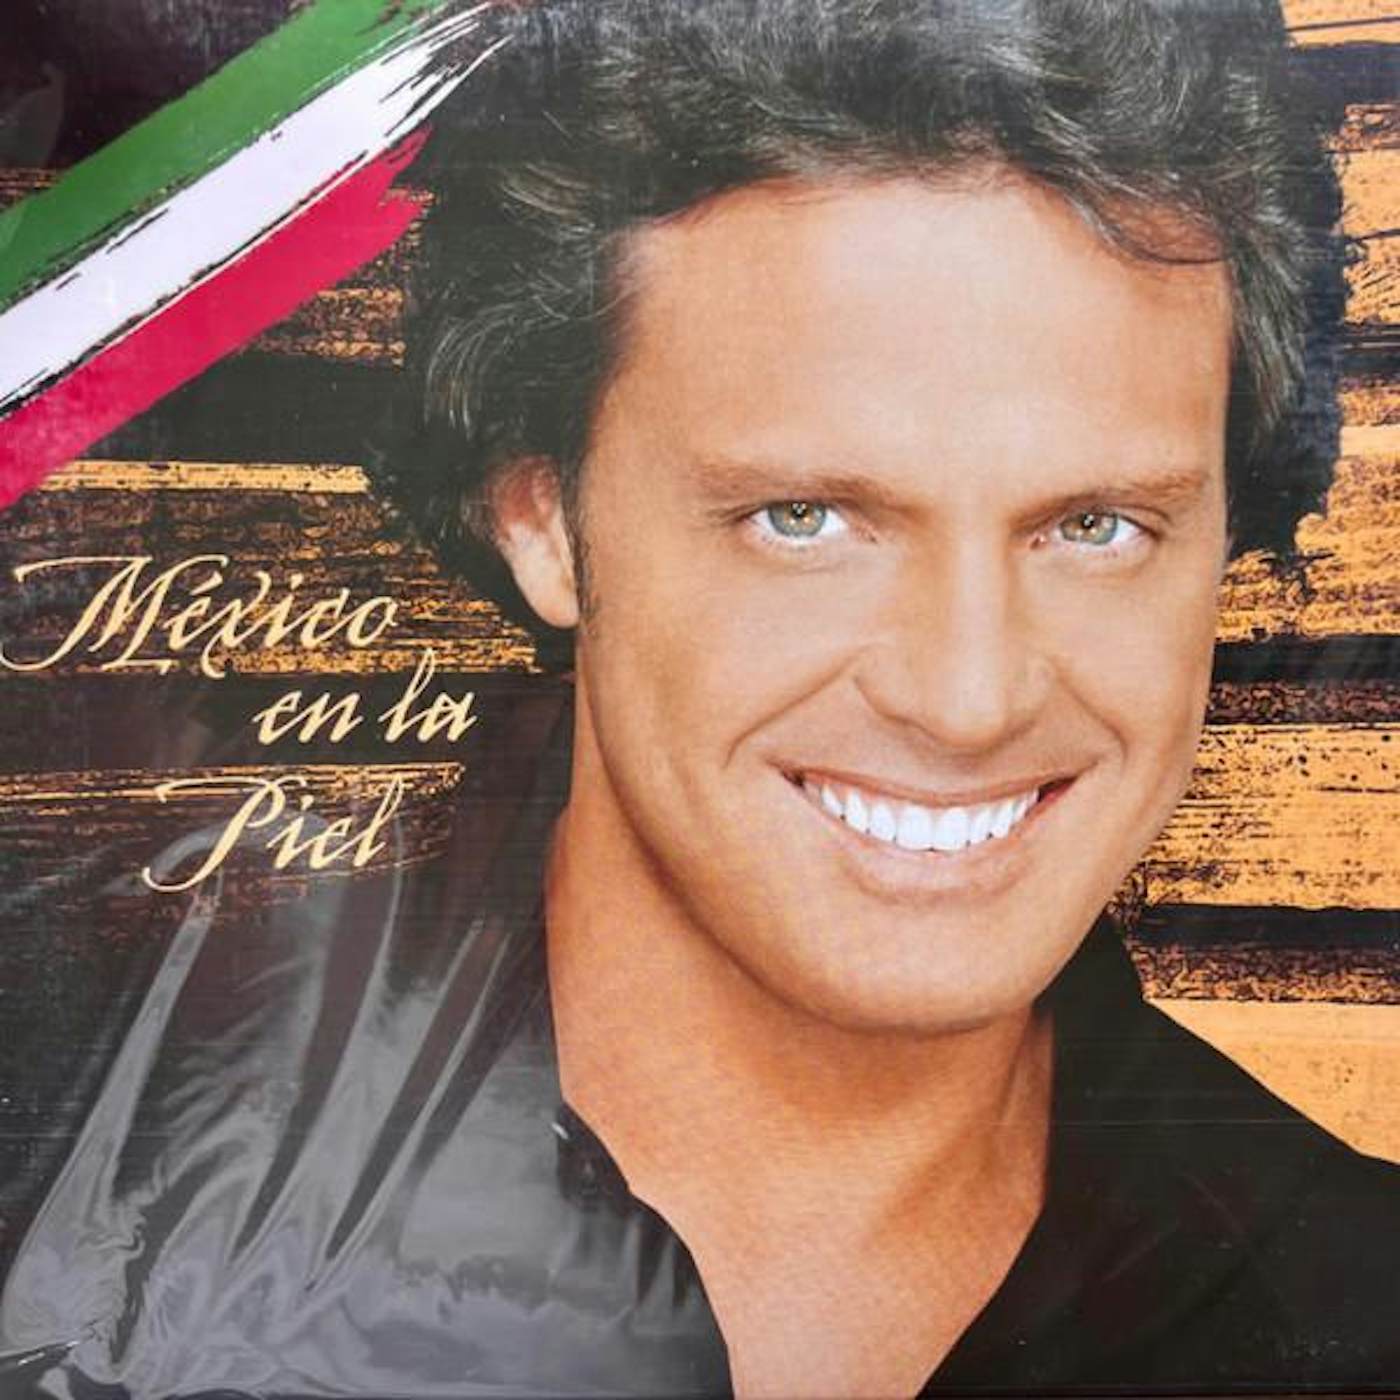 Luis Miguel MEXICO EN LA PIEL Vinyl Record